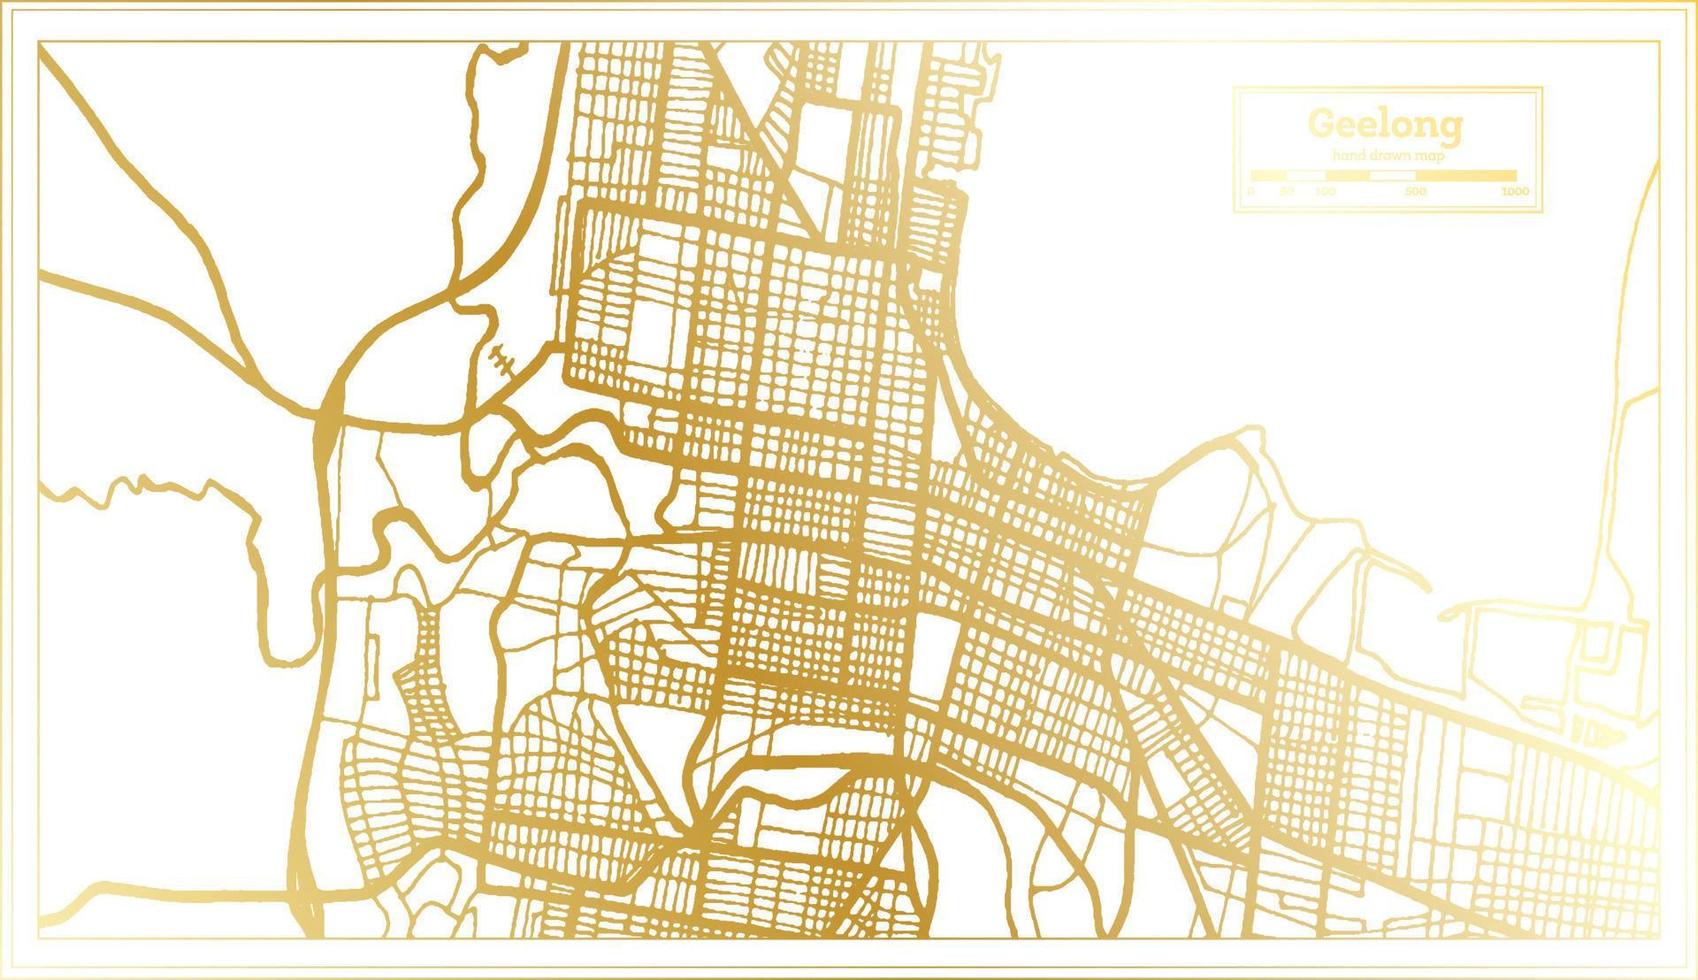 geelong australien stadtplan im retro-stil in goldener farbe. Übersichtskarte. vektor